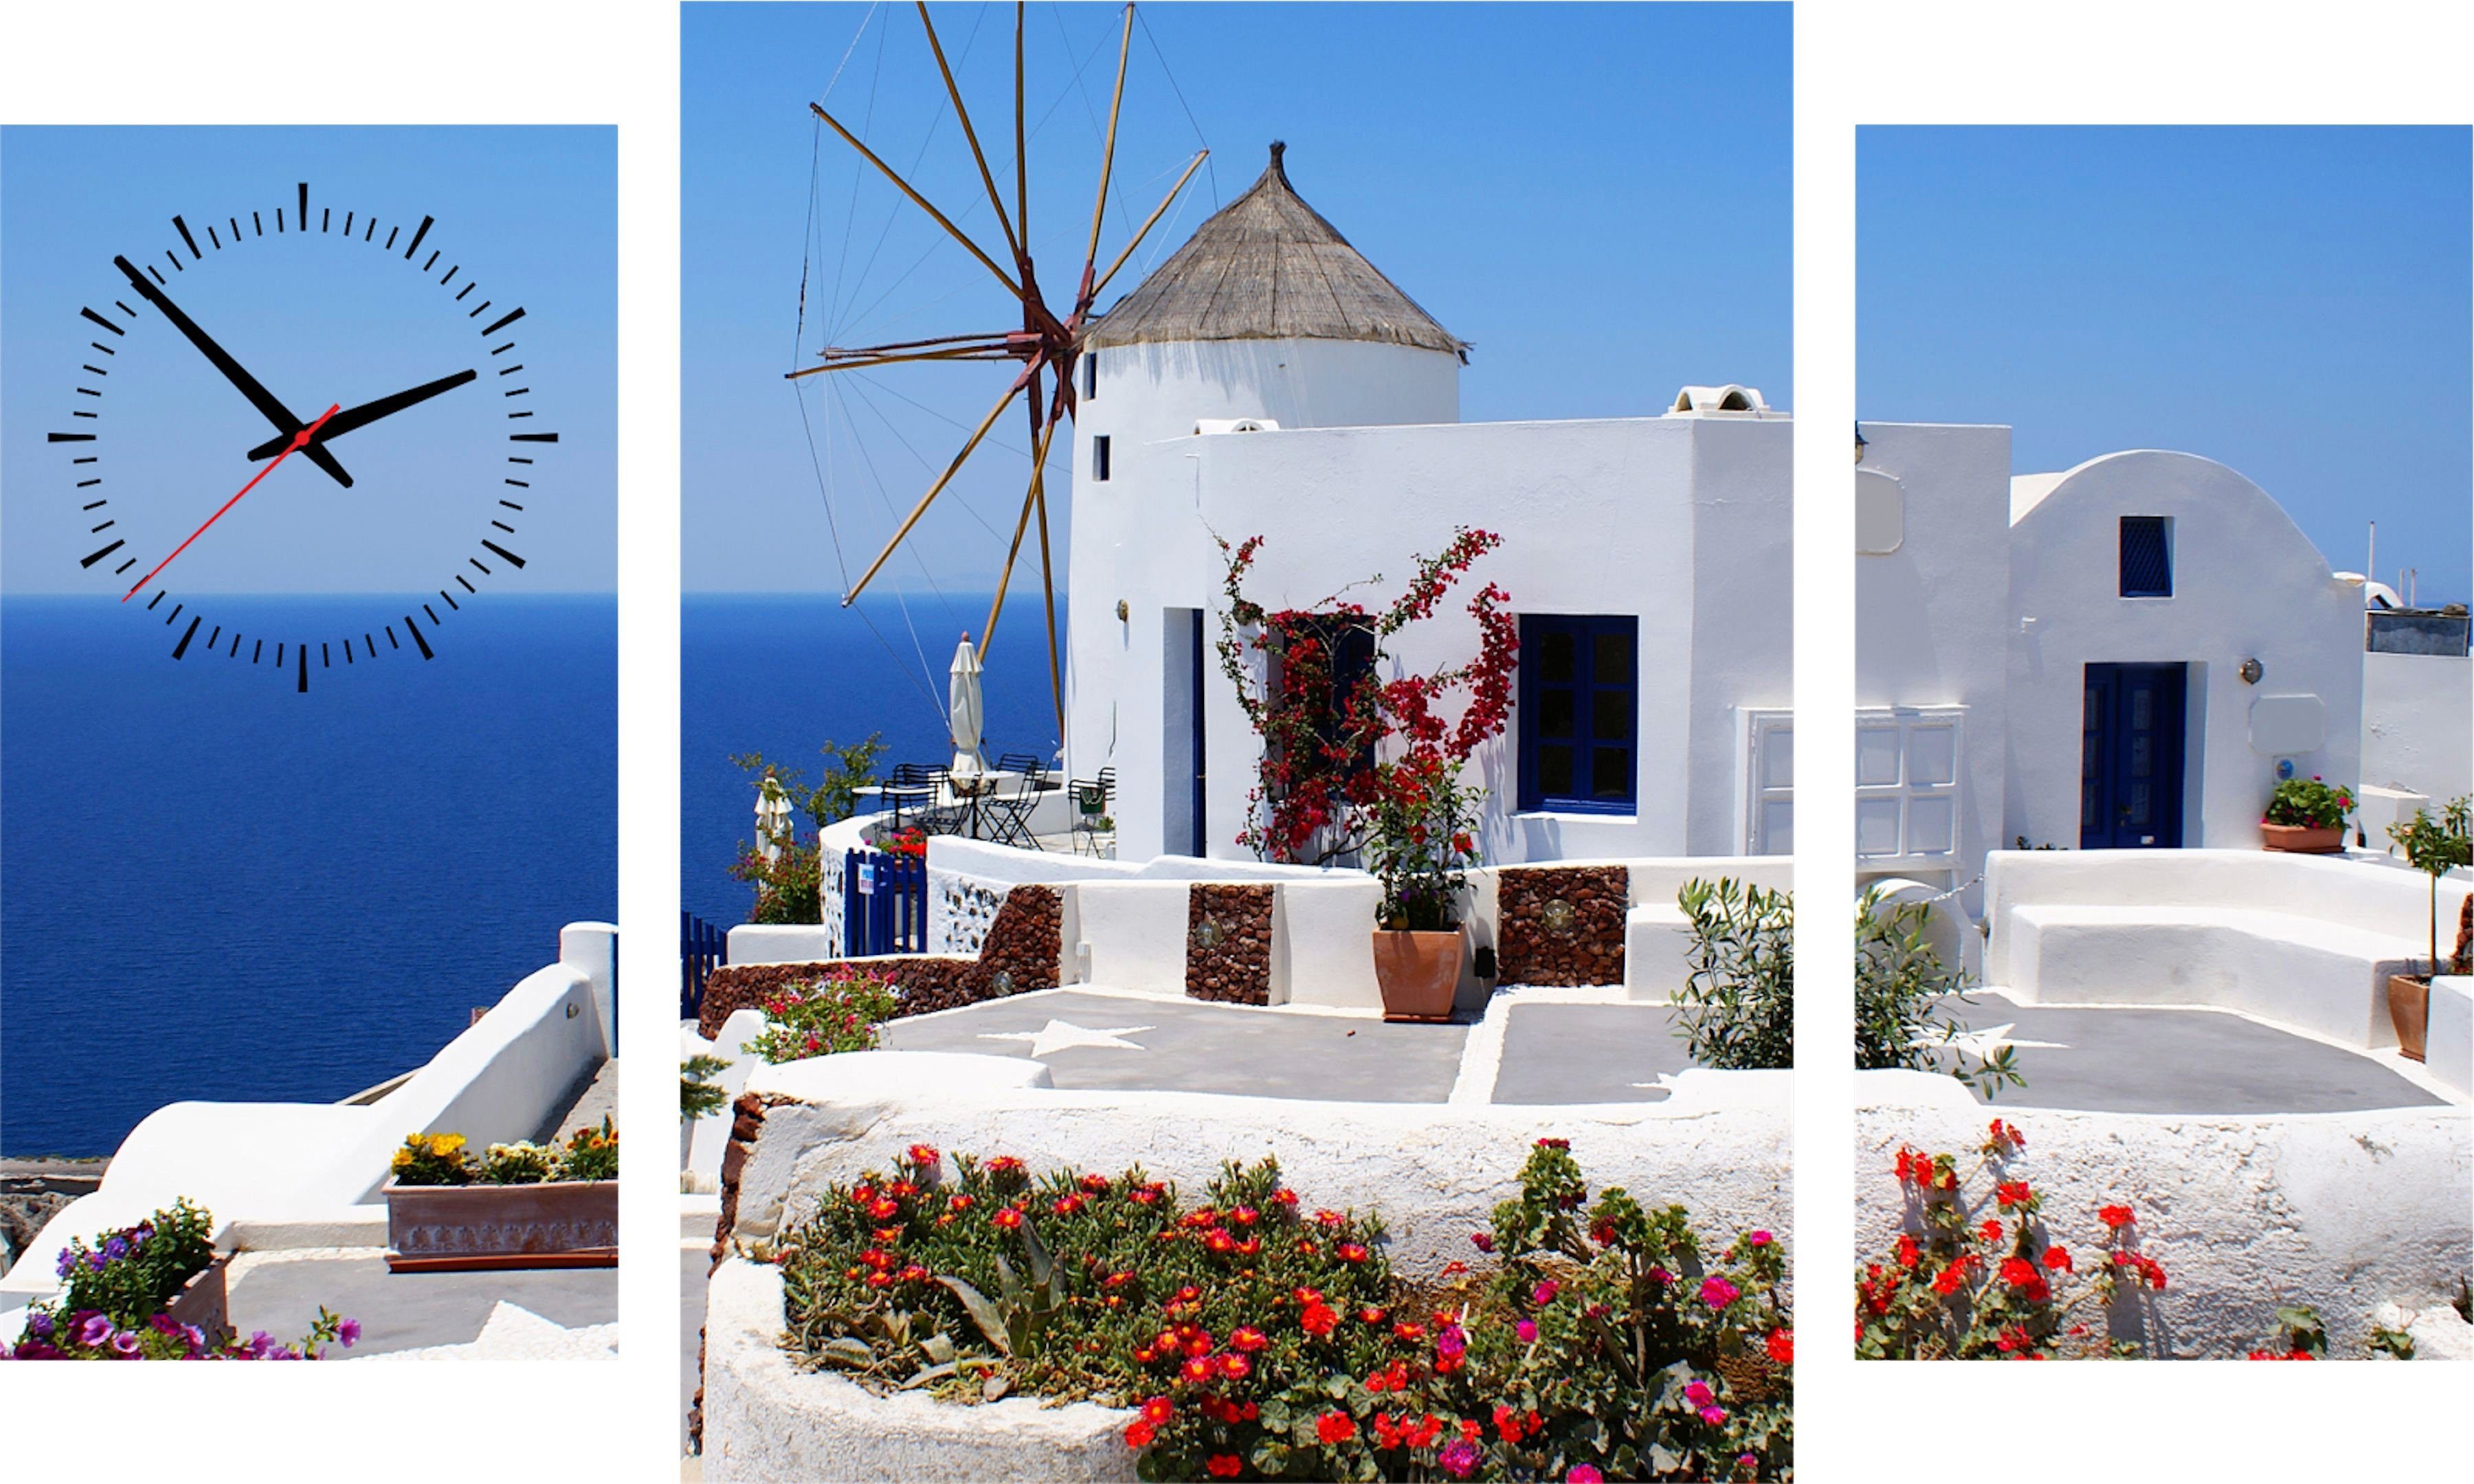 Conni Oberkircher´s Beeld met klok Santorini II - huis aan de zee met decoratieve klok, griekenland, eiland, vakantie, mediterraans (set)